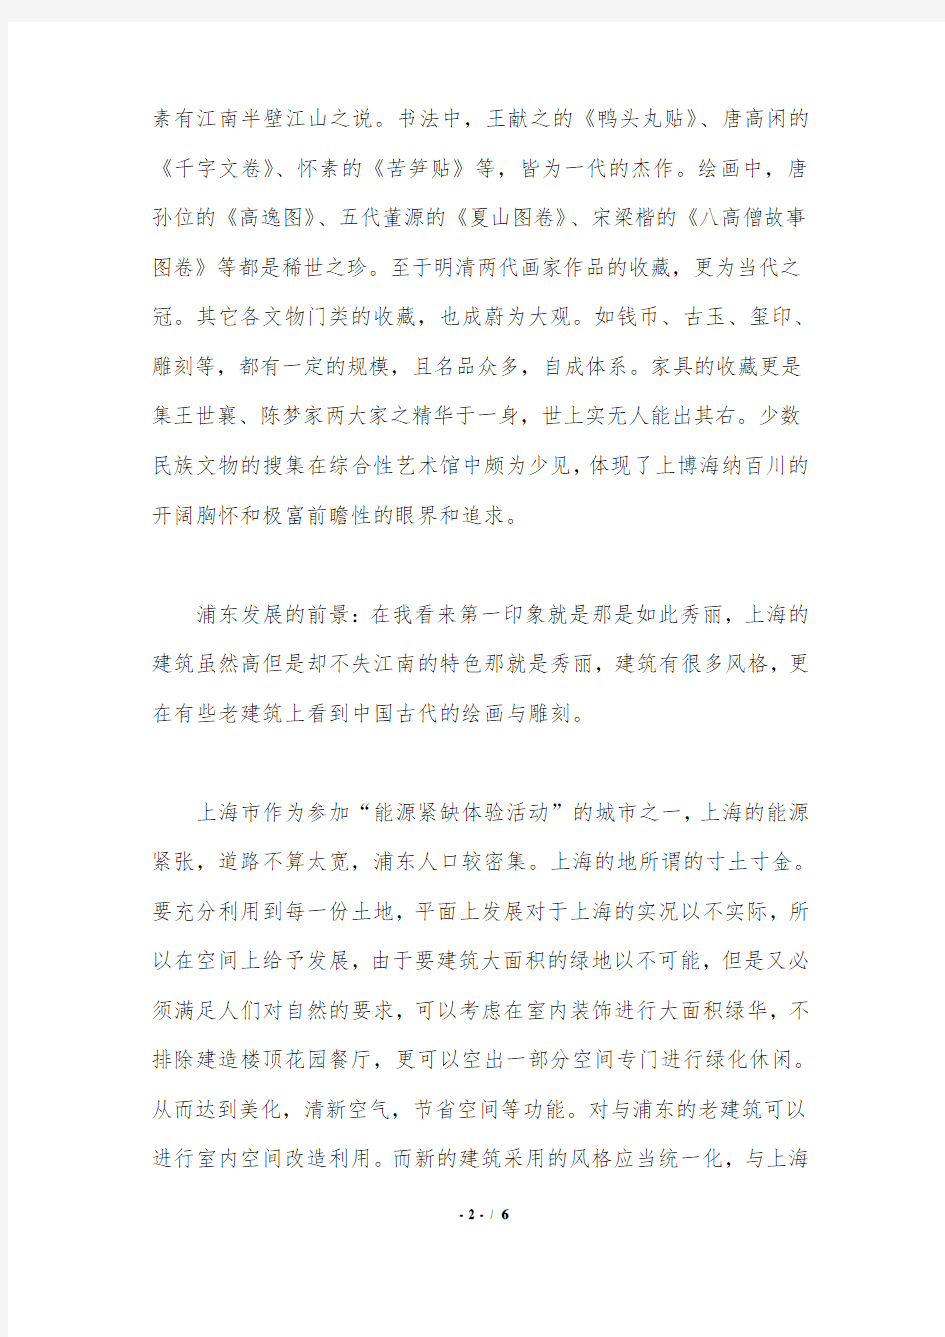 上海博物馆考察报告